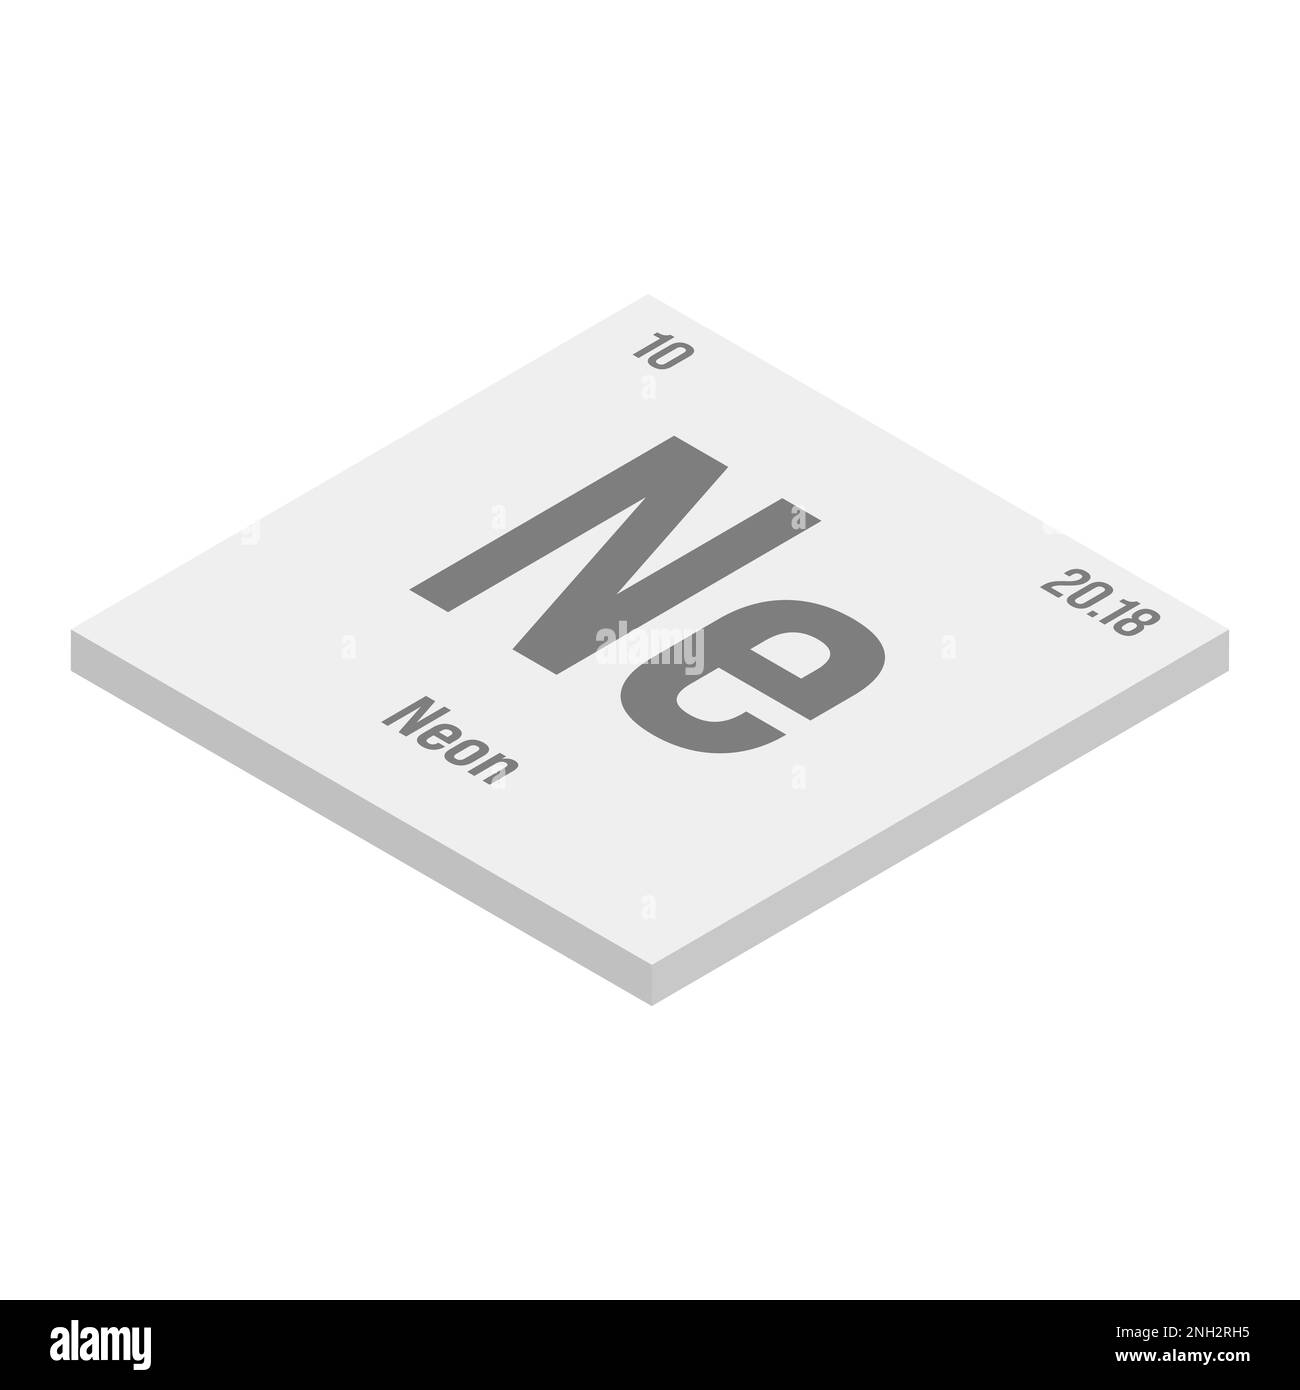 Neon, NE, grigio 3D immagine isometrica dell'elemento periodico della tabella con nome, simbolo, numero atomico e peso. Gas inerte con vari usi industriali, come nell'illuminazione, nei laser e come gas di riempimento in certi tipi di isolamento. Illustrazione Vettoriale